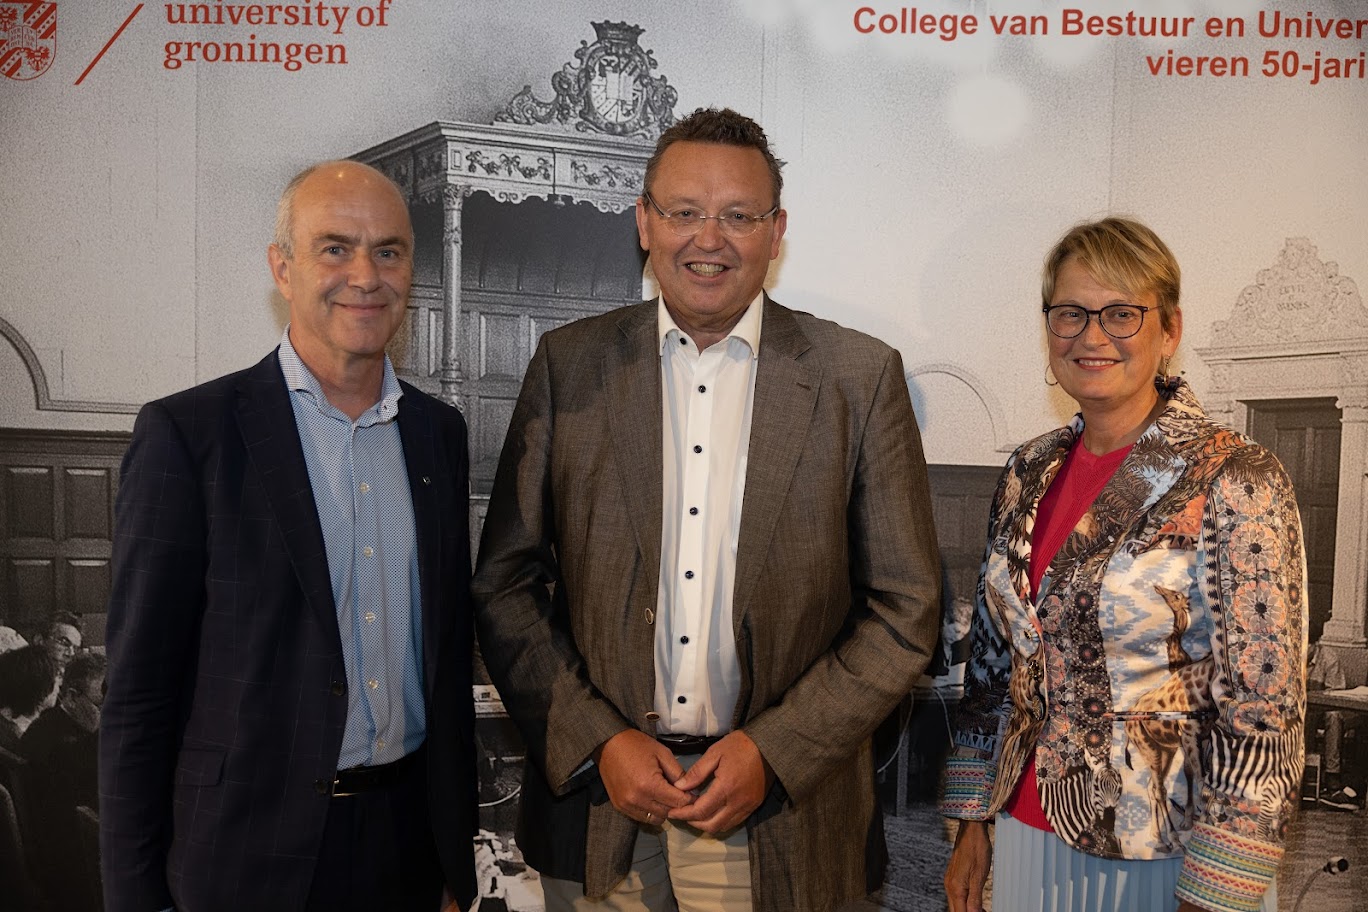 Het College van Bestuur: Hans Biemans, Jouke de Vries en Cisca Wijmenga.The Board of the University, from left to right: Hans Biemans, Jouke de Vries and Cisca Wijmenga